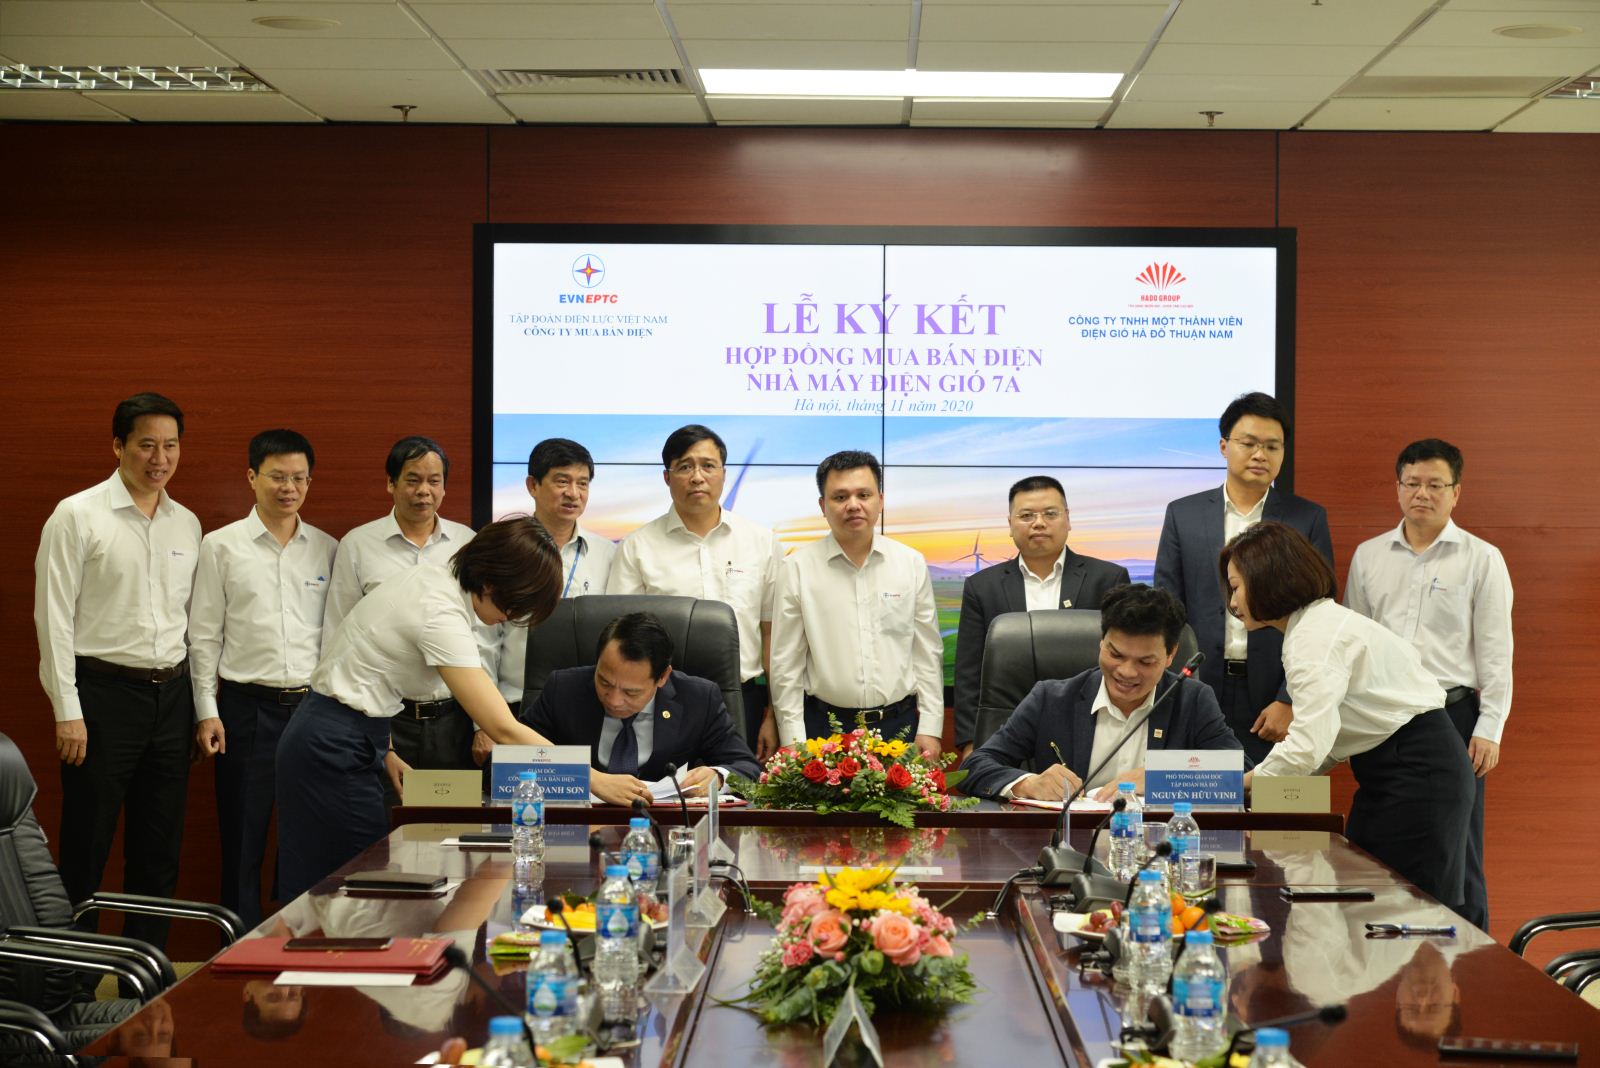 Tập đoàn Hà Đô ký kết hợp đồng mua bán điện với Tập đoàn Điện lực Quốc gia Việt Nam  tại dự án điện gió 7A